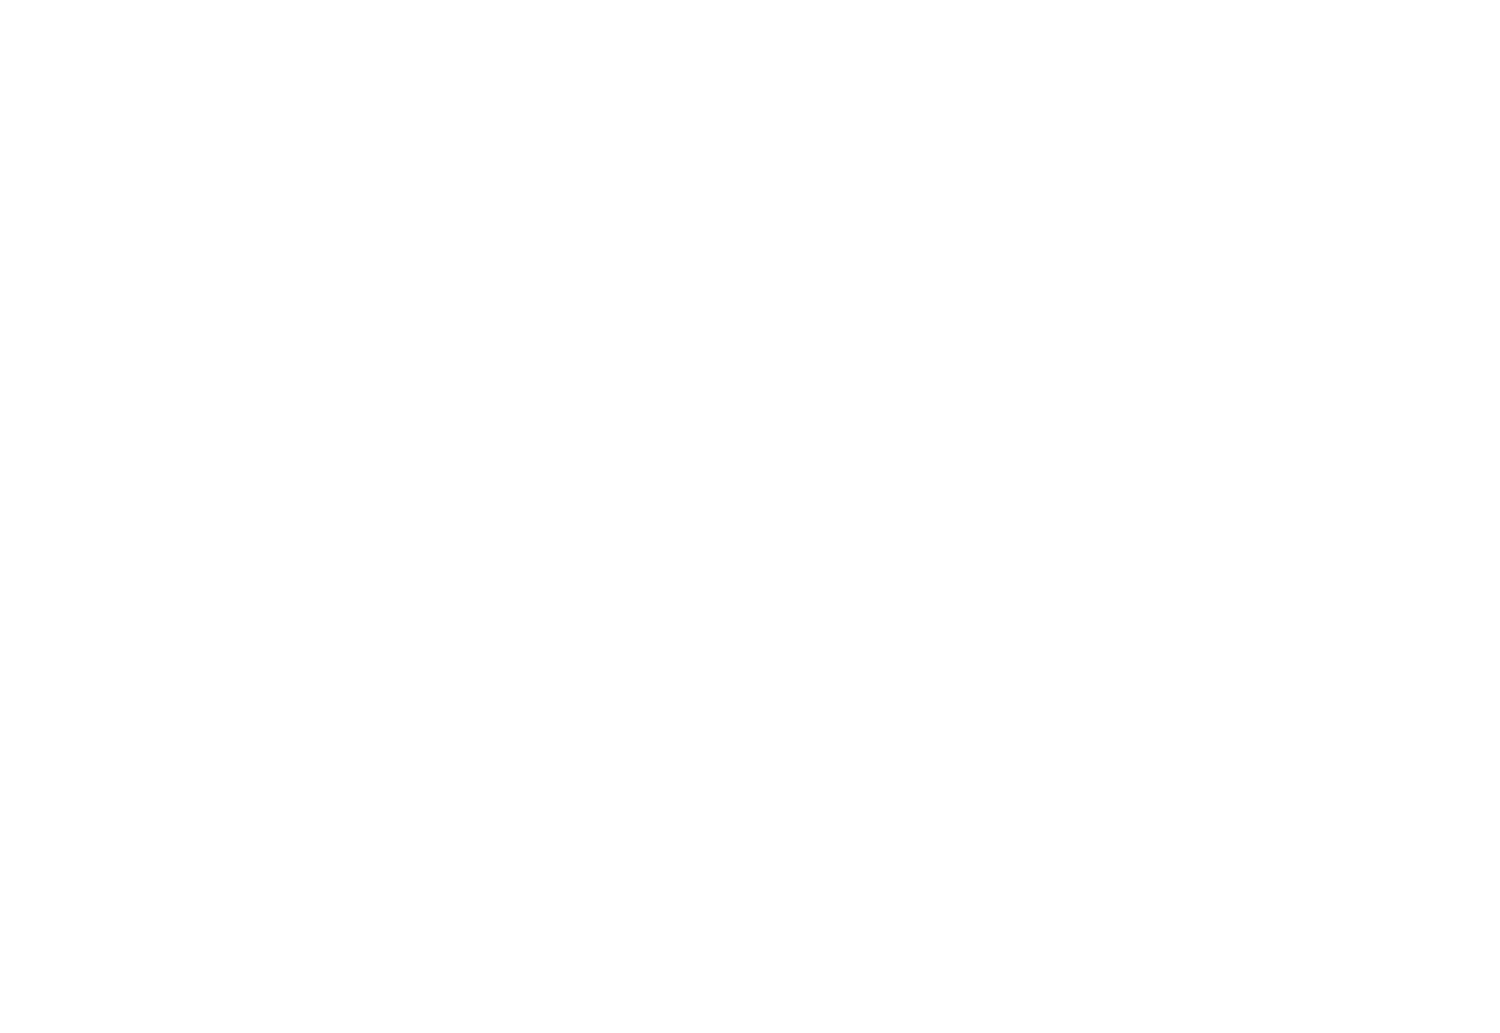  Voices Advance